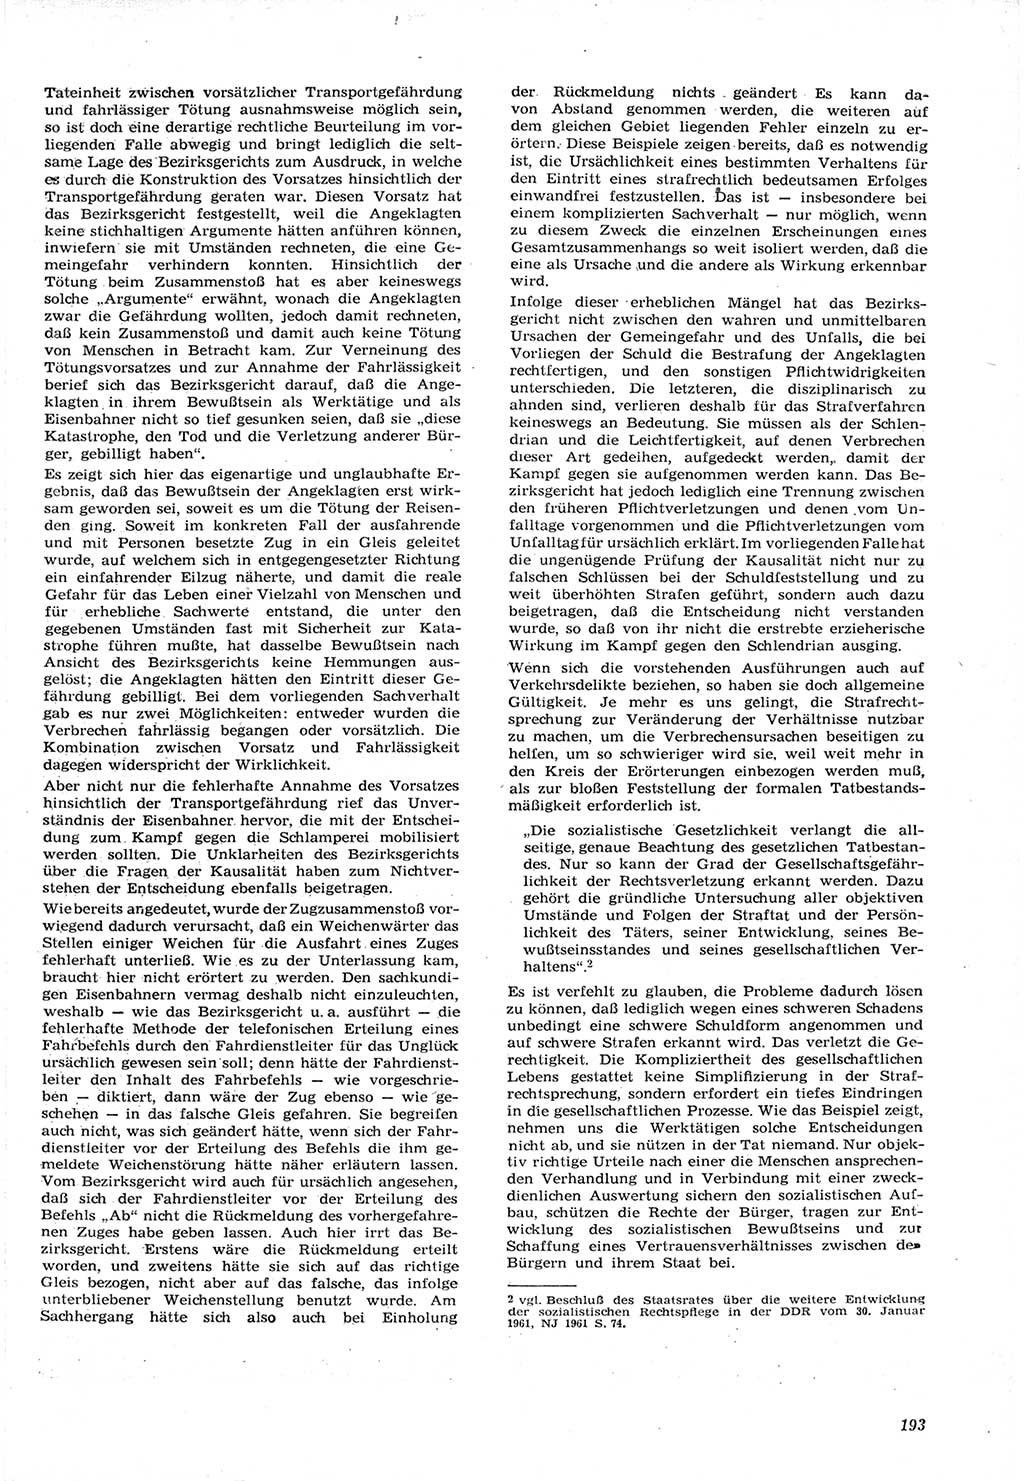 Neue Justiz (NJ), Zeitschrift für Recht und Rechtswissenschaft [Deutsche Demokratische Republik (DDR)], 15. Jahrgang 1961, Seite 193 (NJ DDR 1961, S. 193)